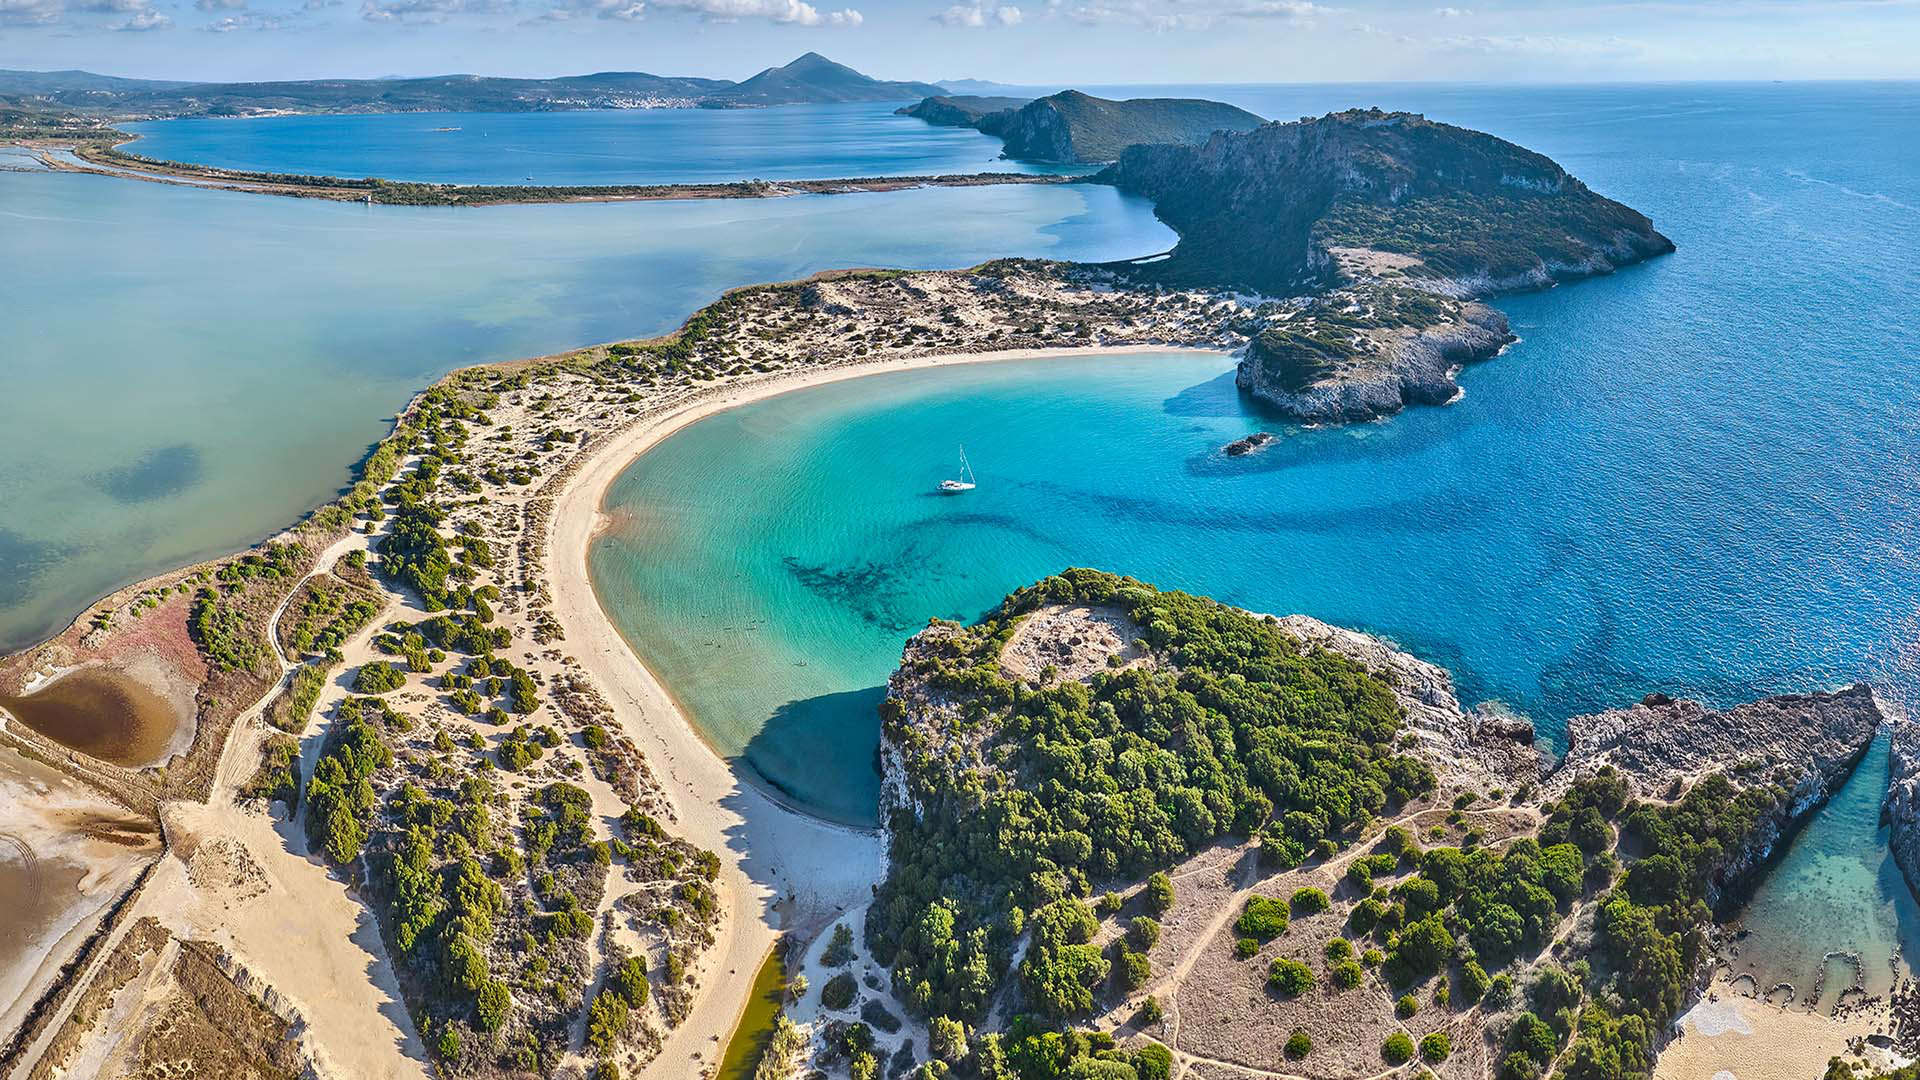 Voidokilia beach in Messenia, Peloponnese, Greece